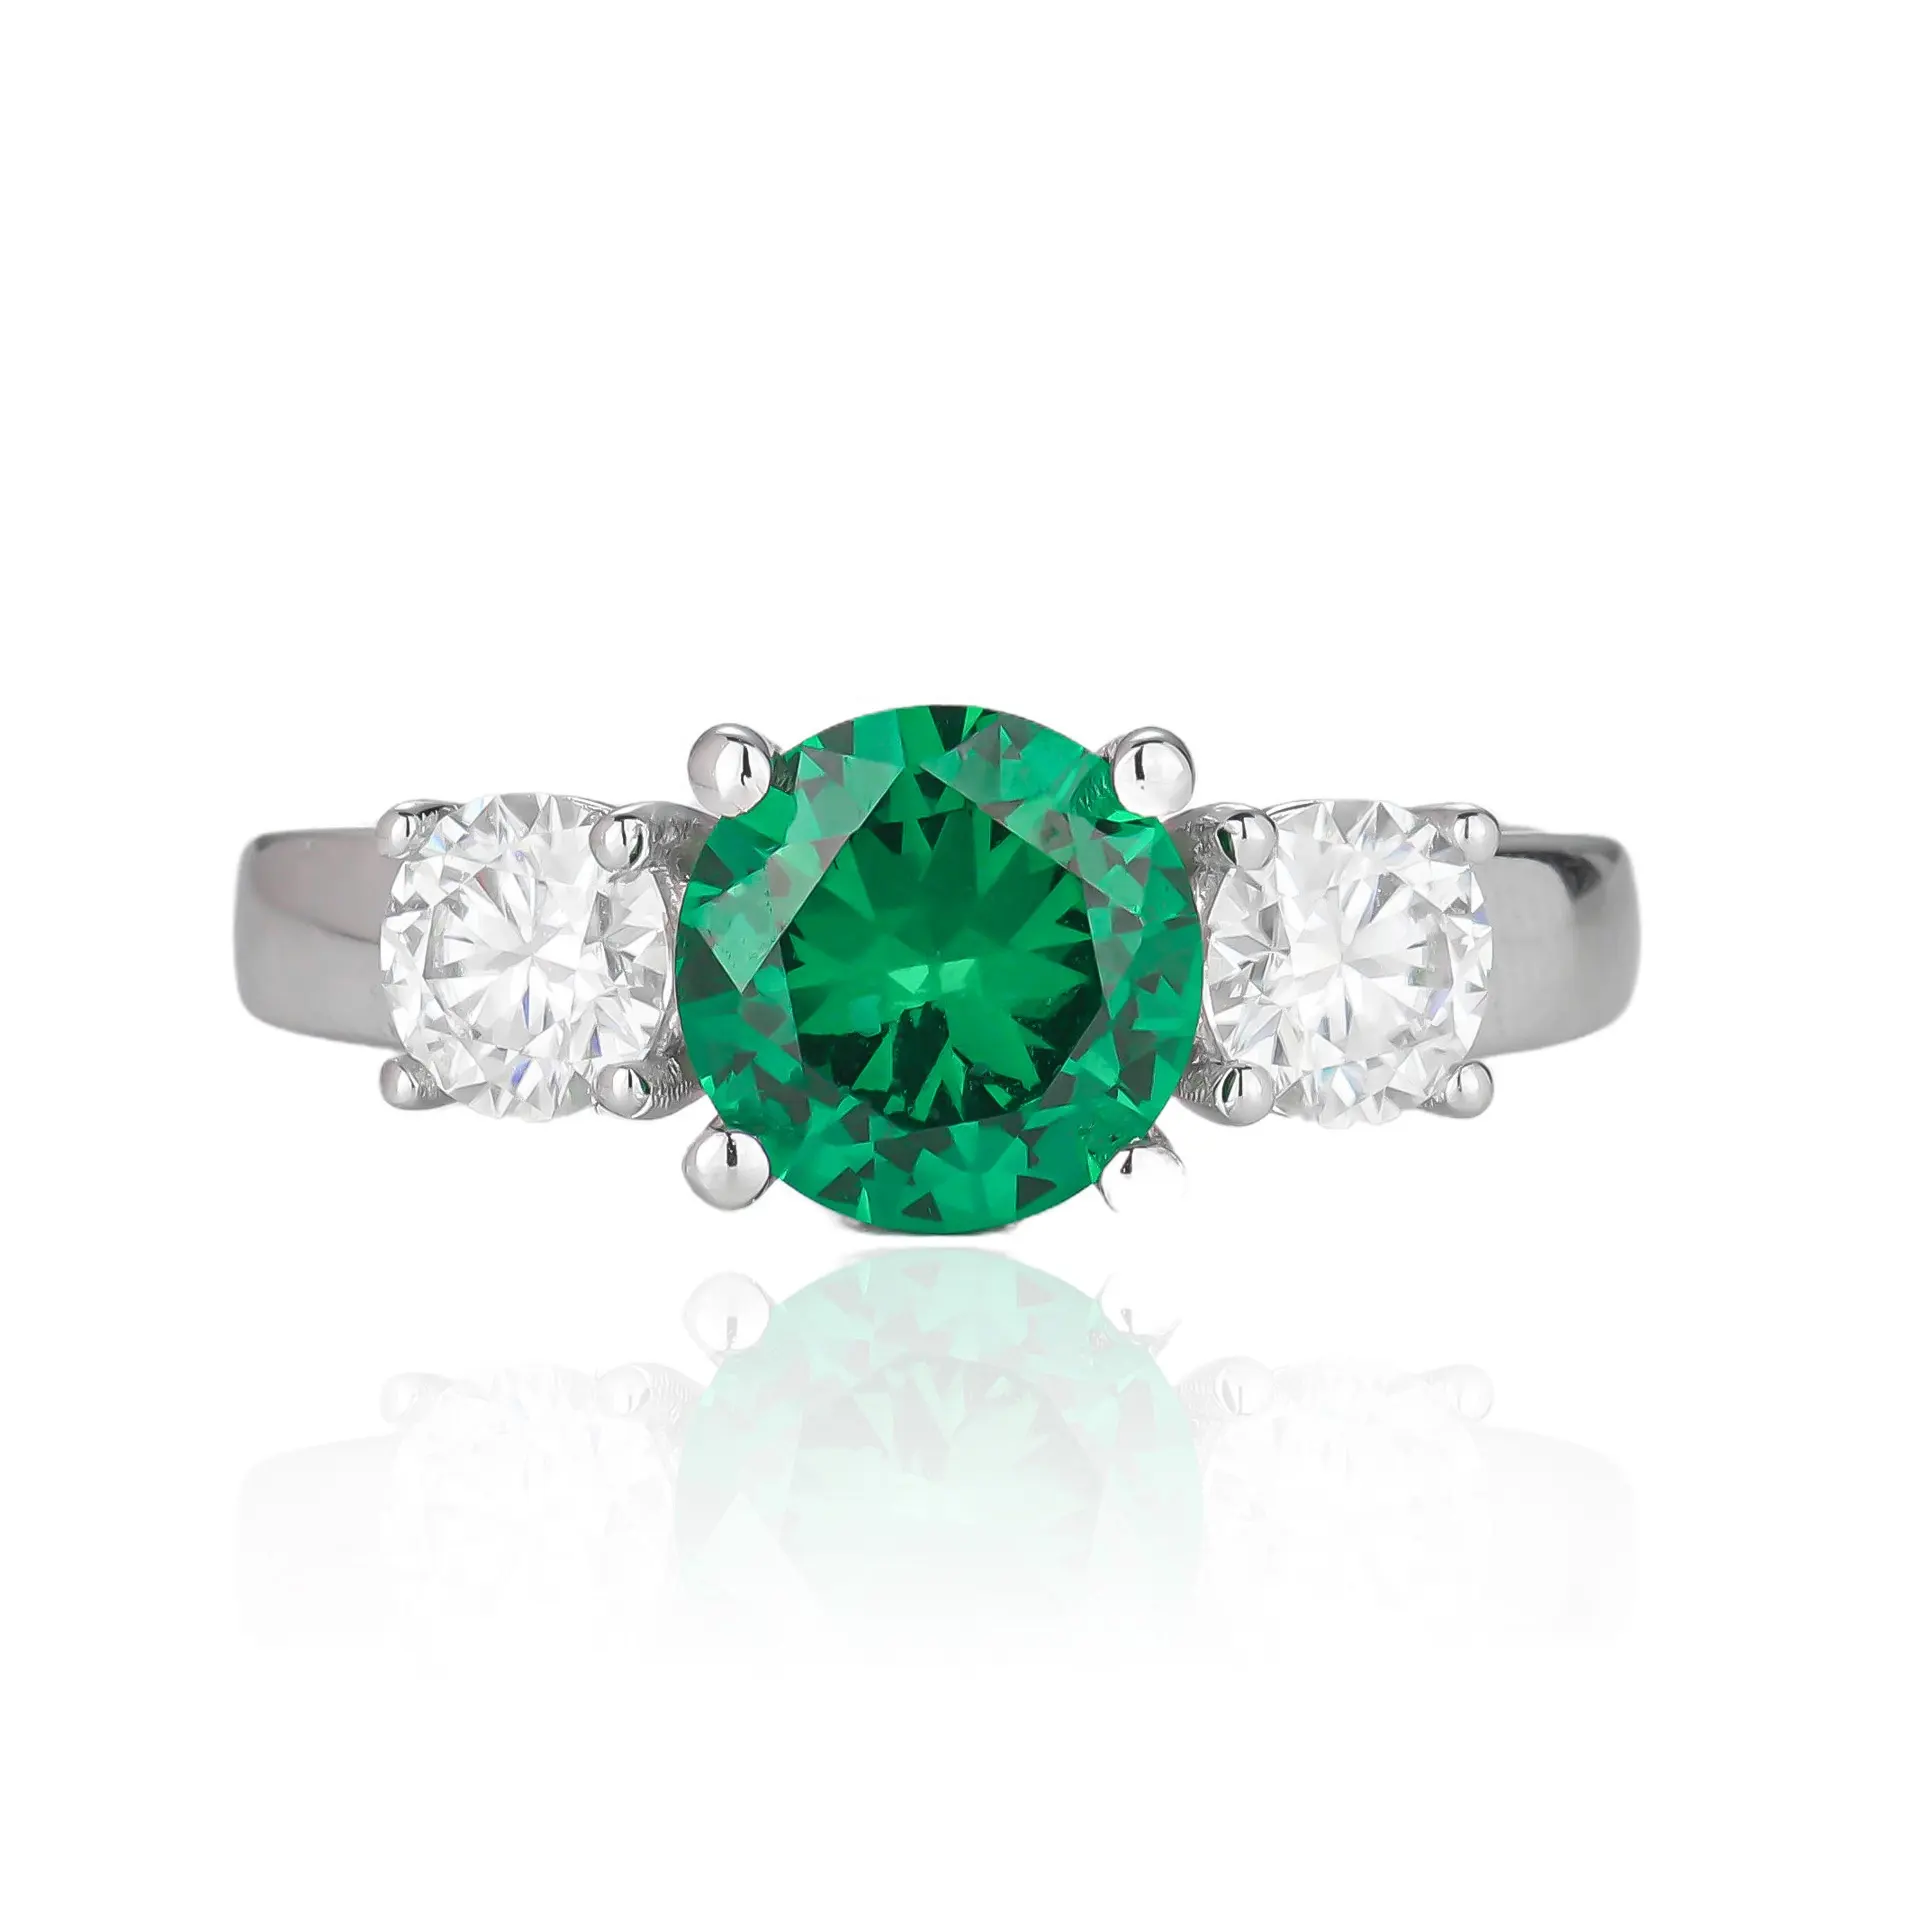 DEYIN nueva llegada joyería de moda 925 Plata 2.28ct anillo de piedra verde esmeralda colombiano señoras